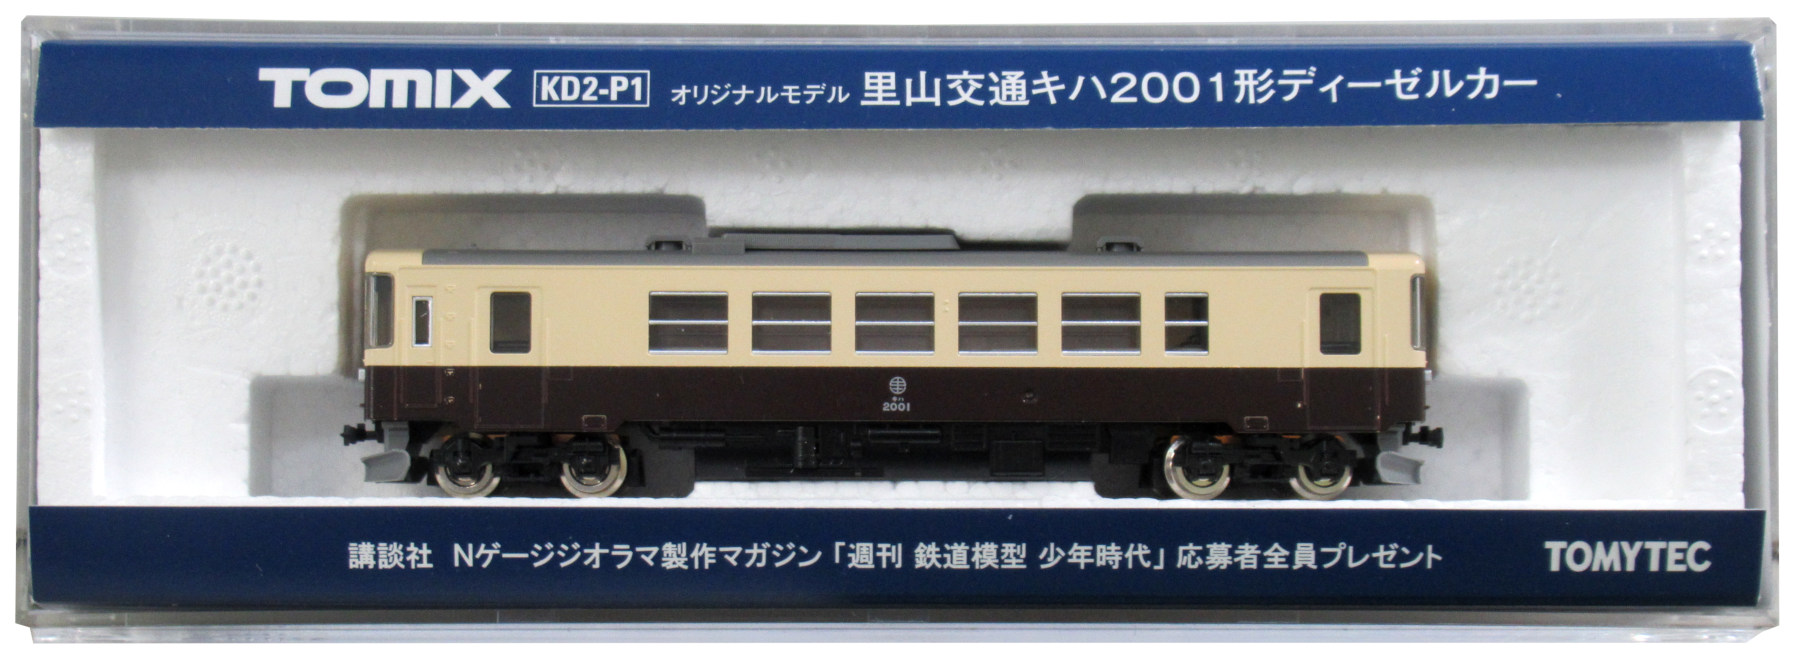 公式]鉄道模型(KD2-P1里山交通キハ2001型ディーゼルカー)商品詳細 